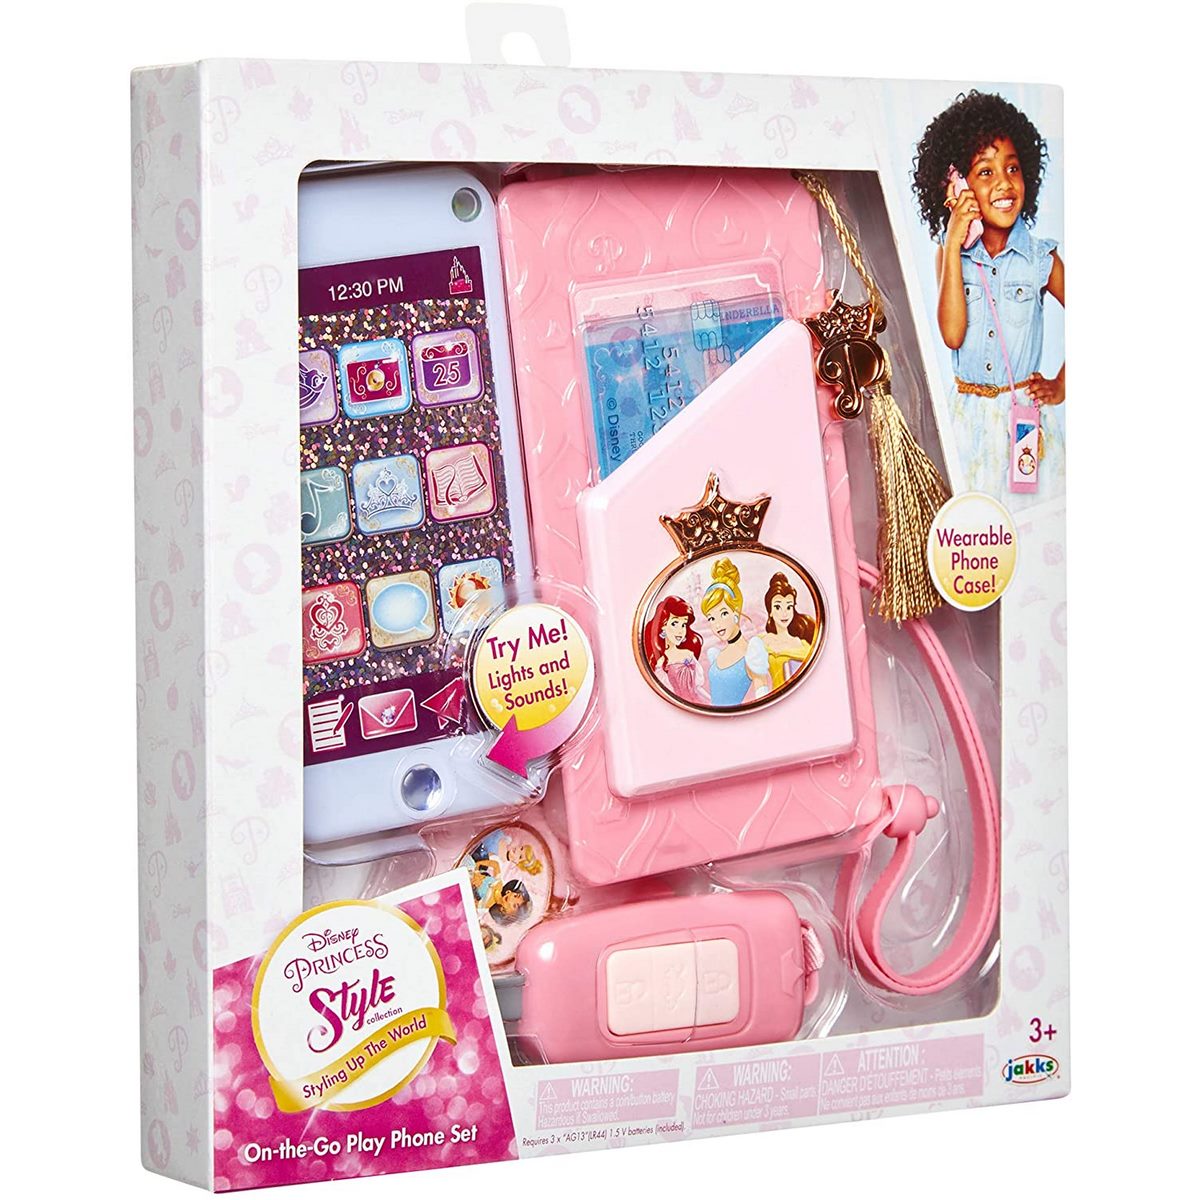 Mon premier smartphone Disney princesse - téléphone jouet